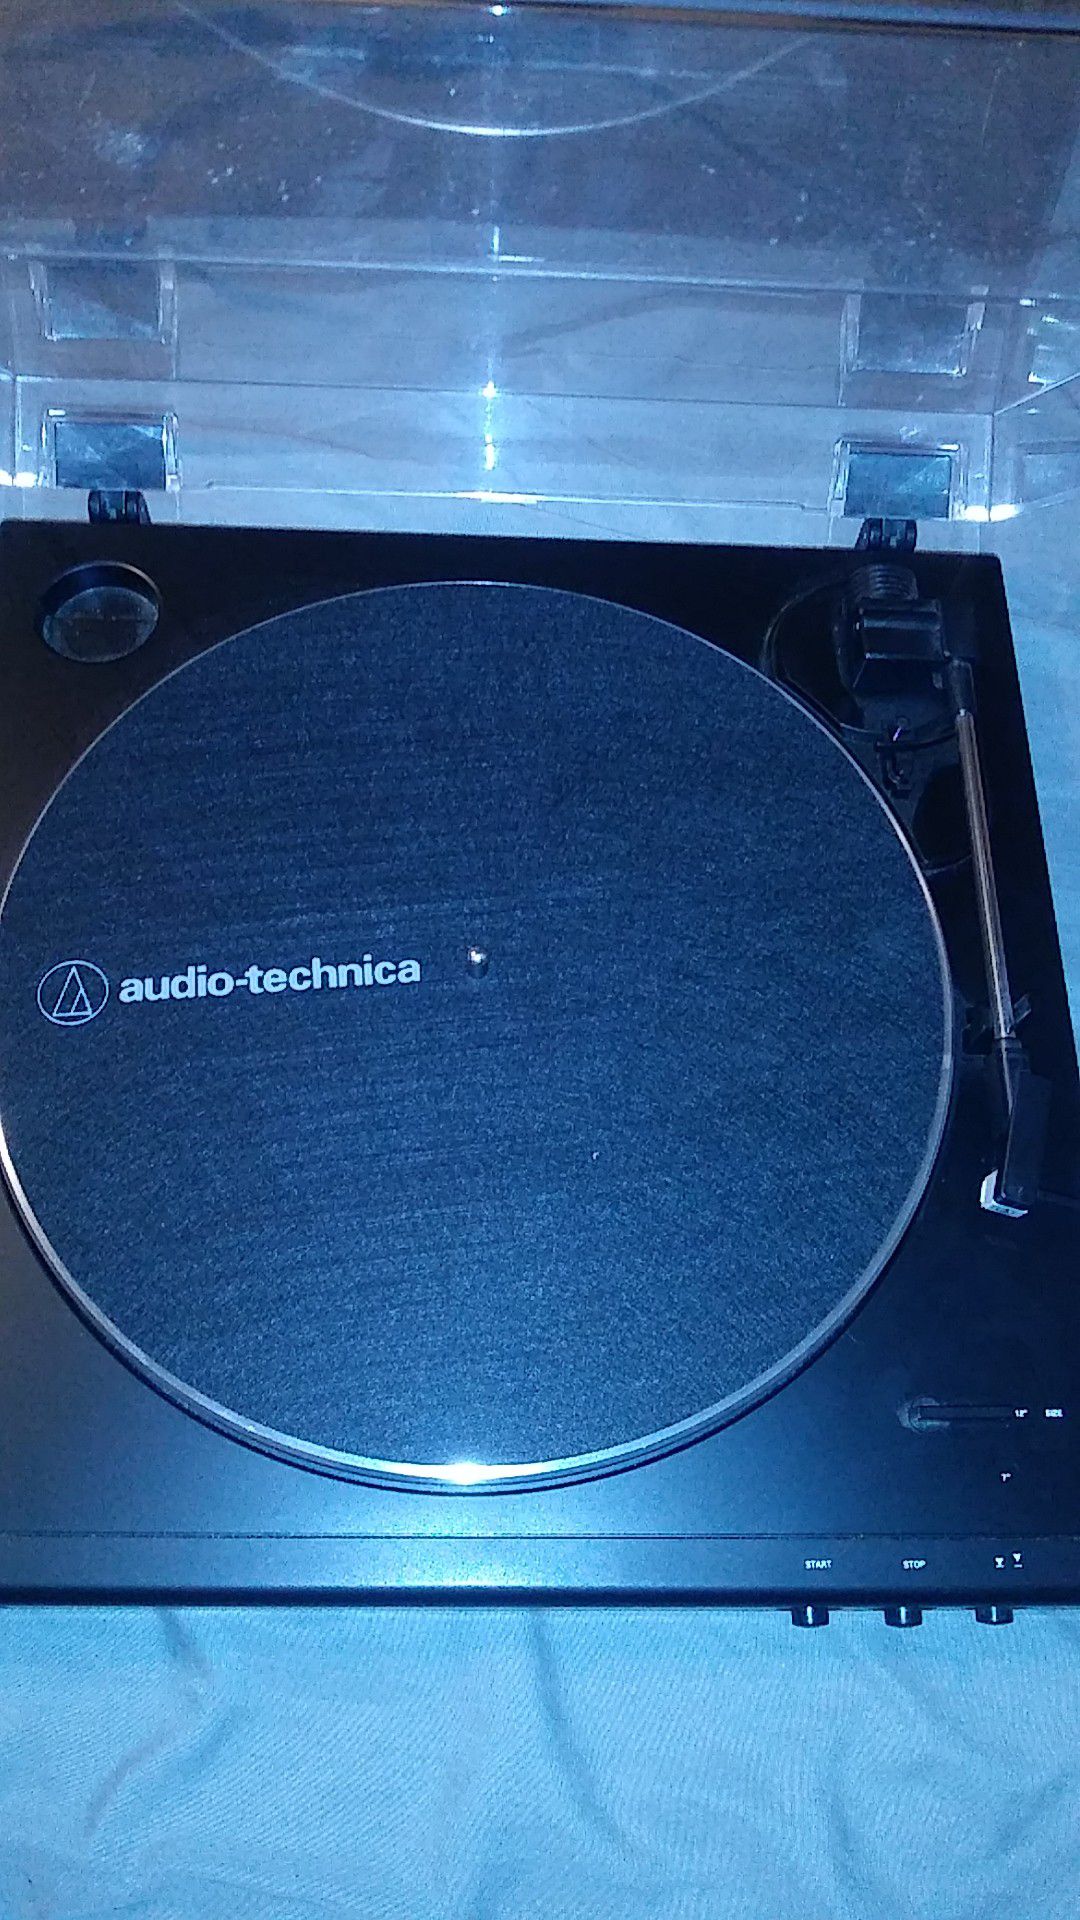 Audoi-technica record player